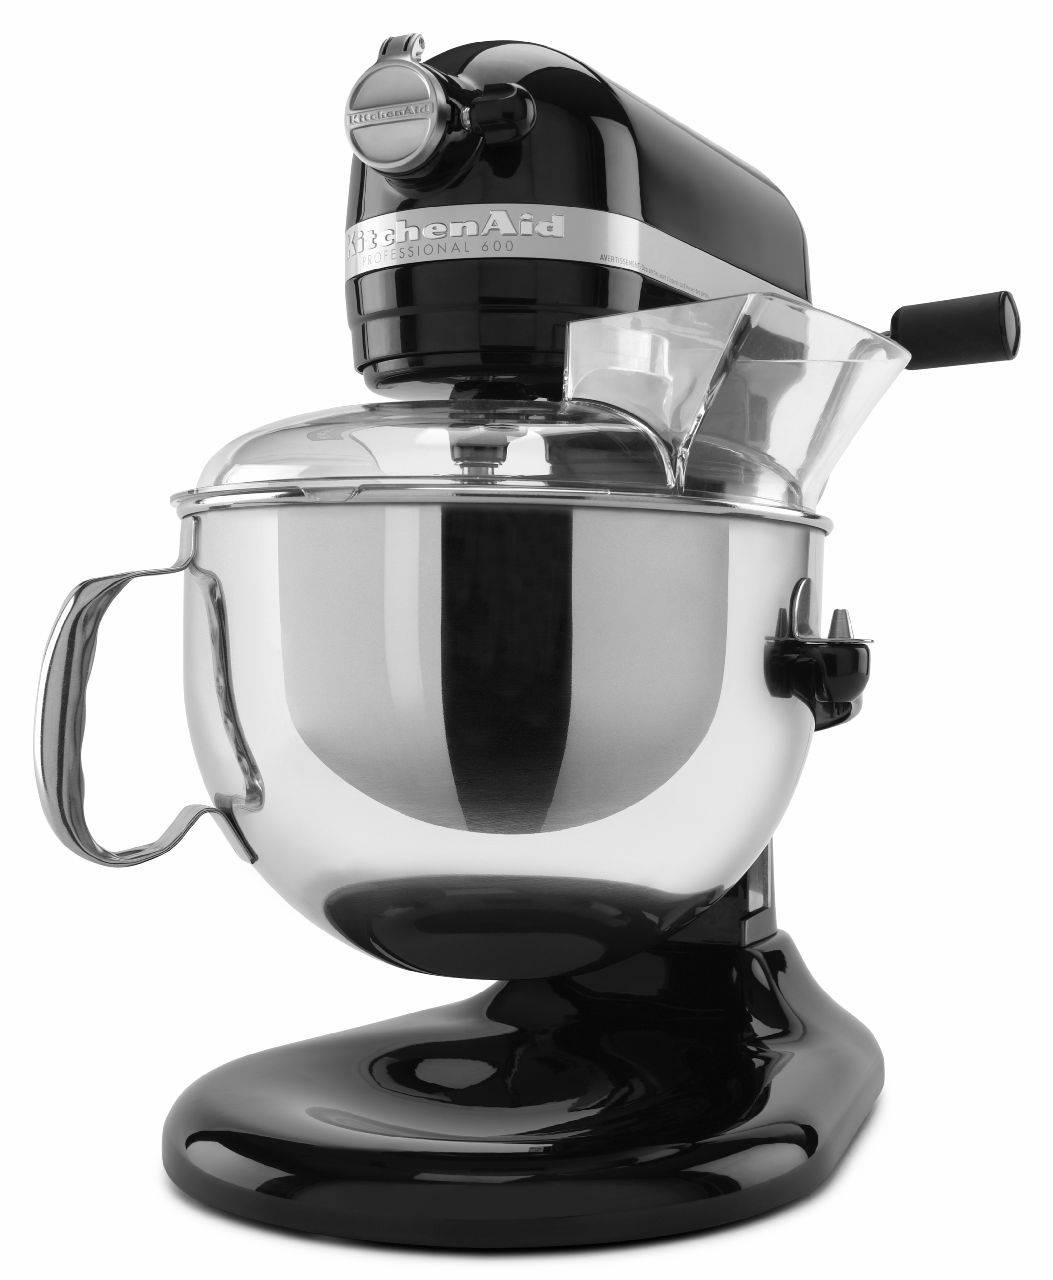 KitchenAid Professional 600 Series 6qt Bowl-Lift Stand Mixer, Aqua Sky